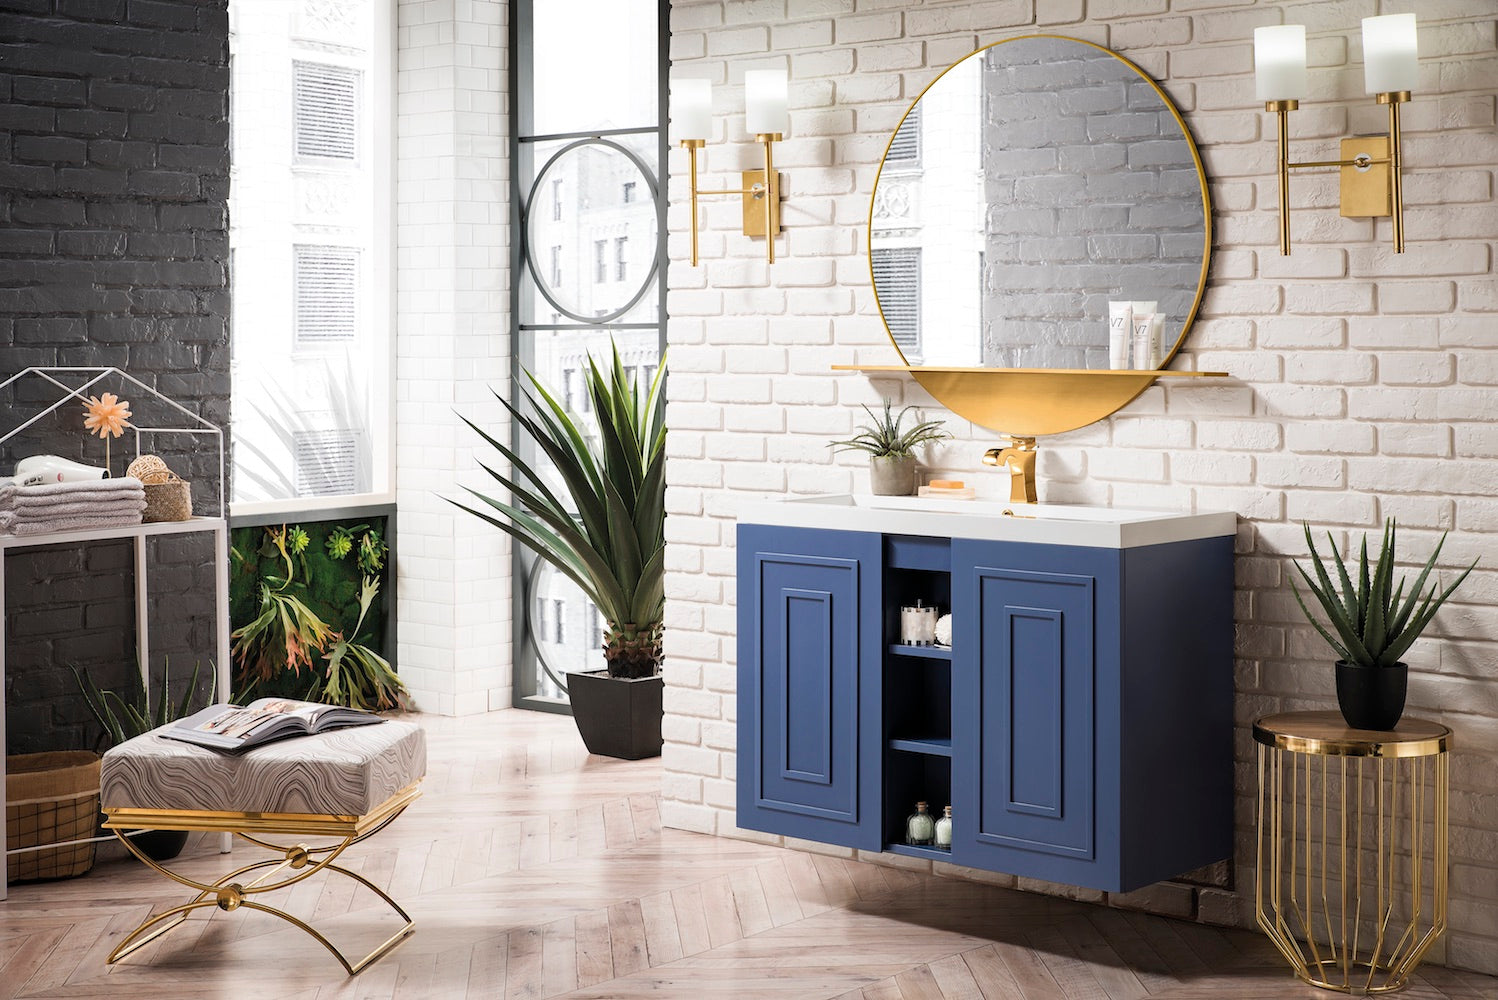 39.5" Alicante Single Sink Bathroom Vanity, Azure Blue w/ Countertop